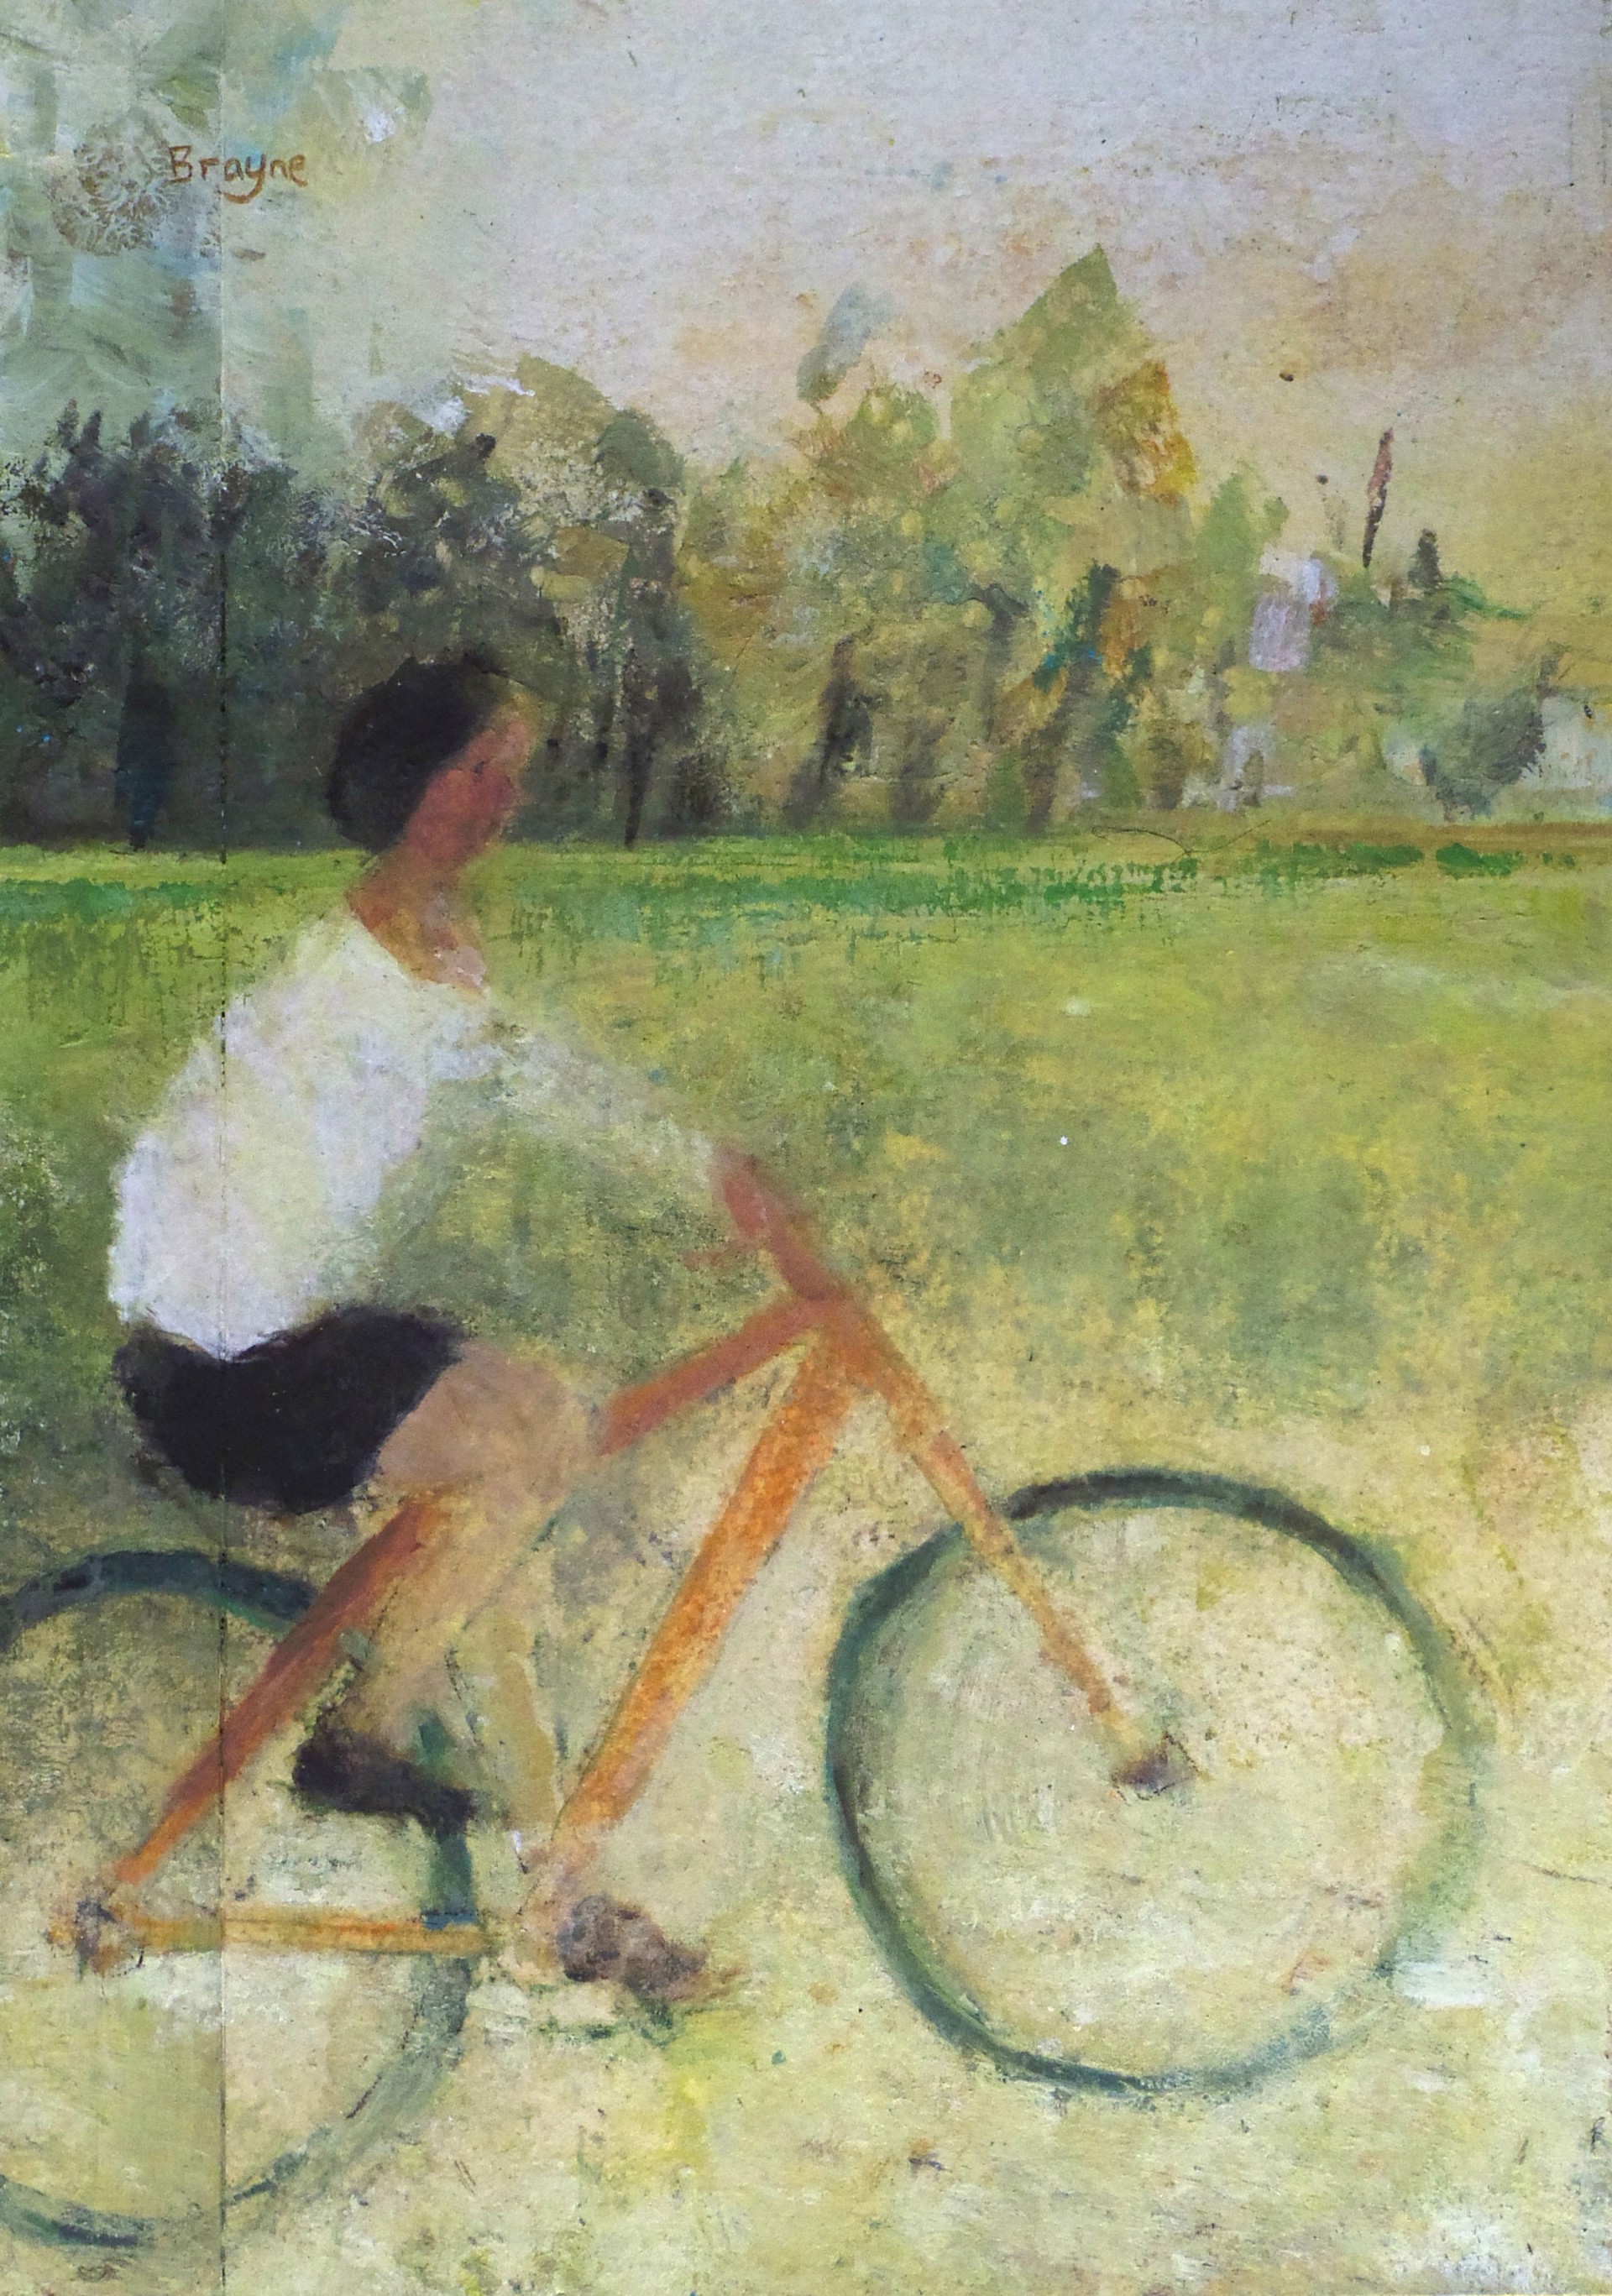 Cyclist by David Brayne R.W.S.